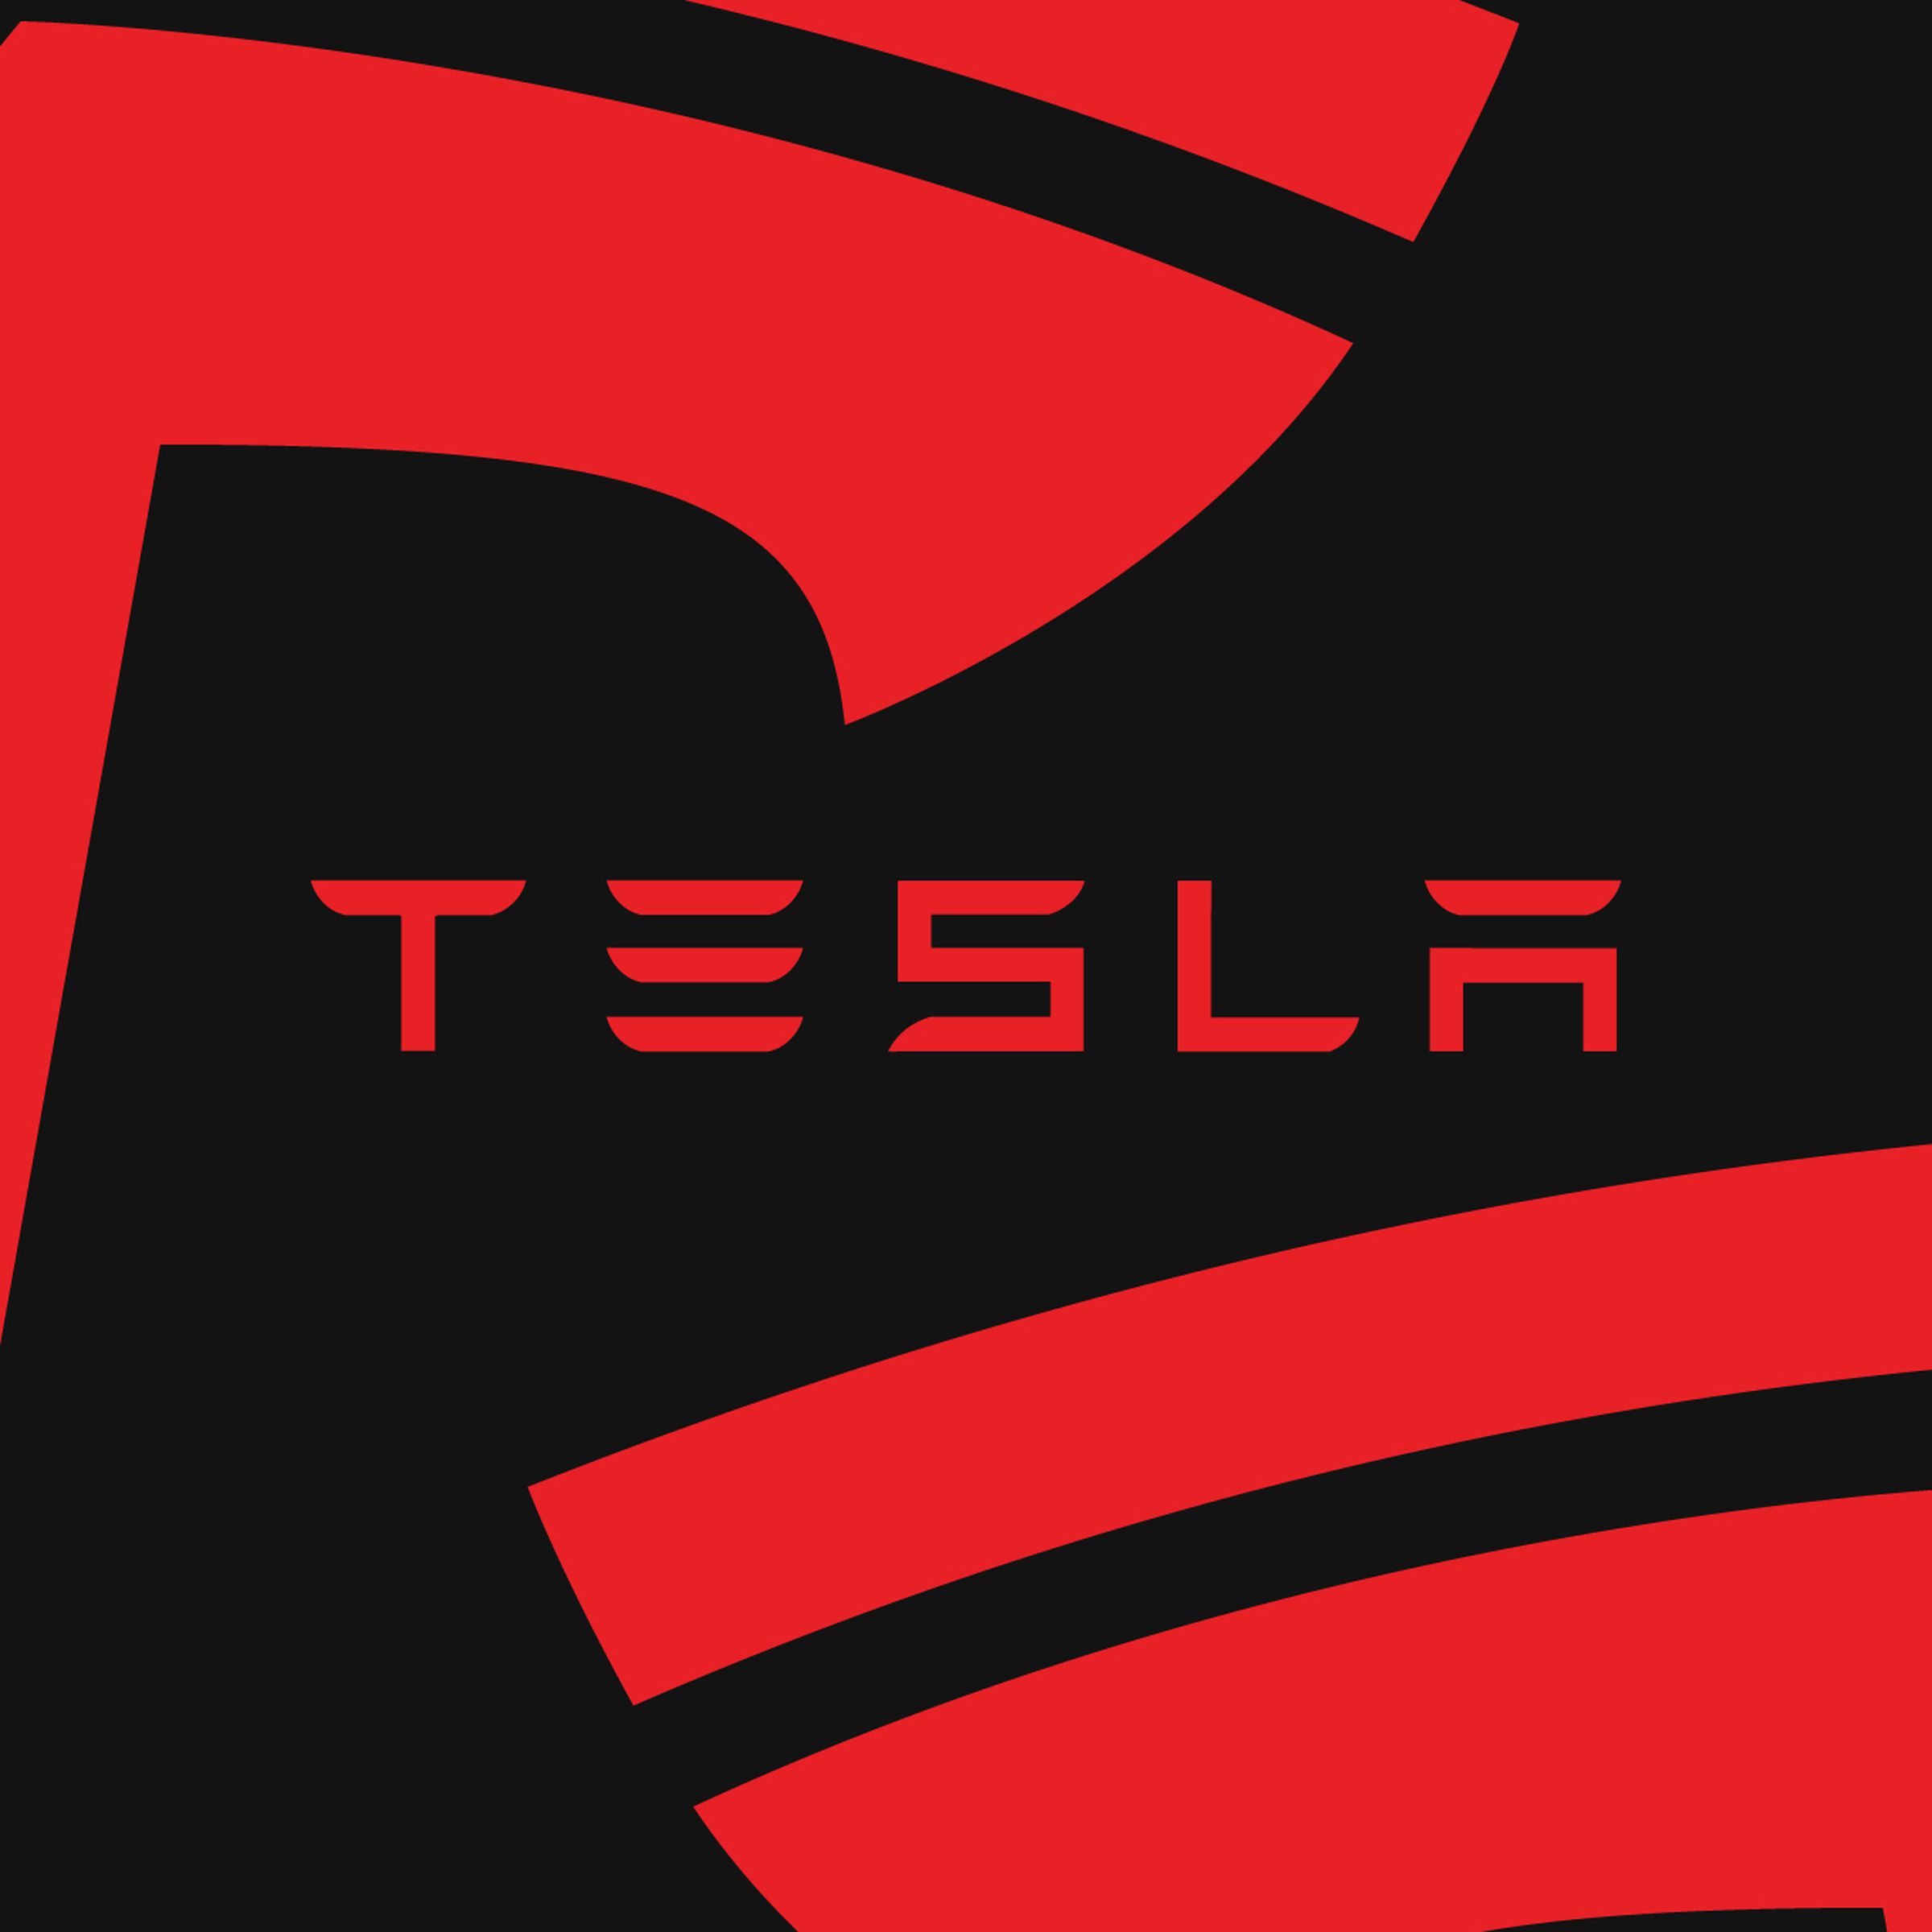 Tesla logo in red on black background